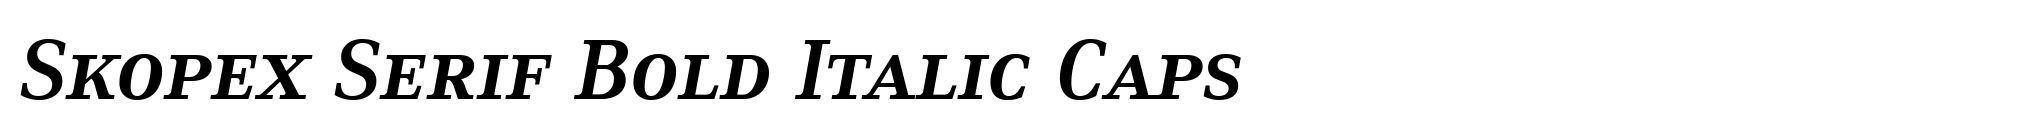 Skopex Serif Bold Italic Caps image